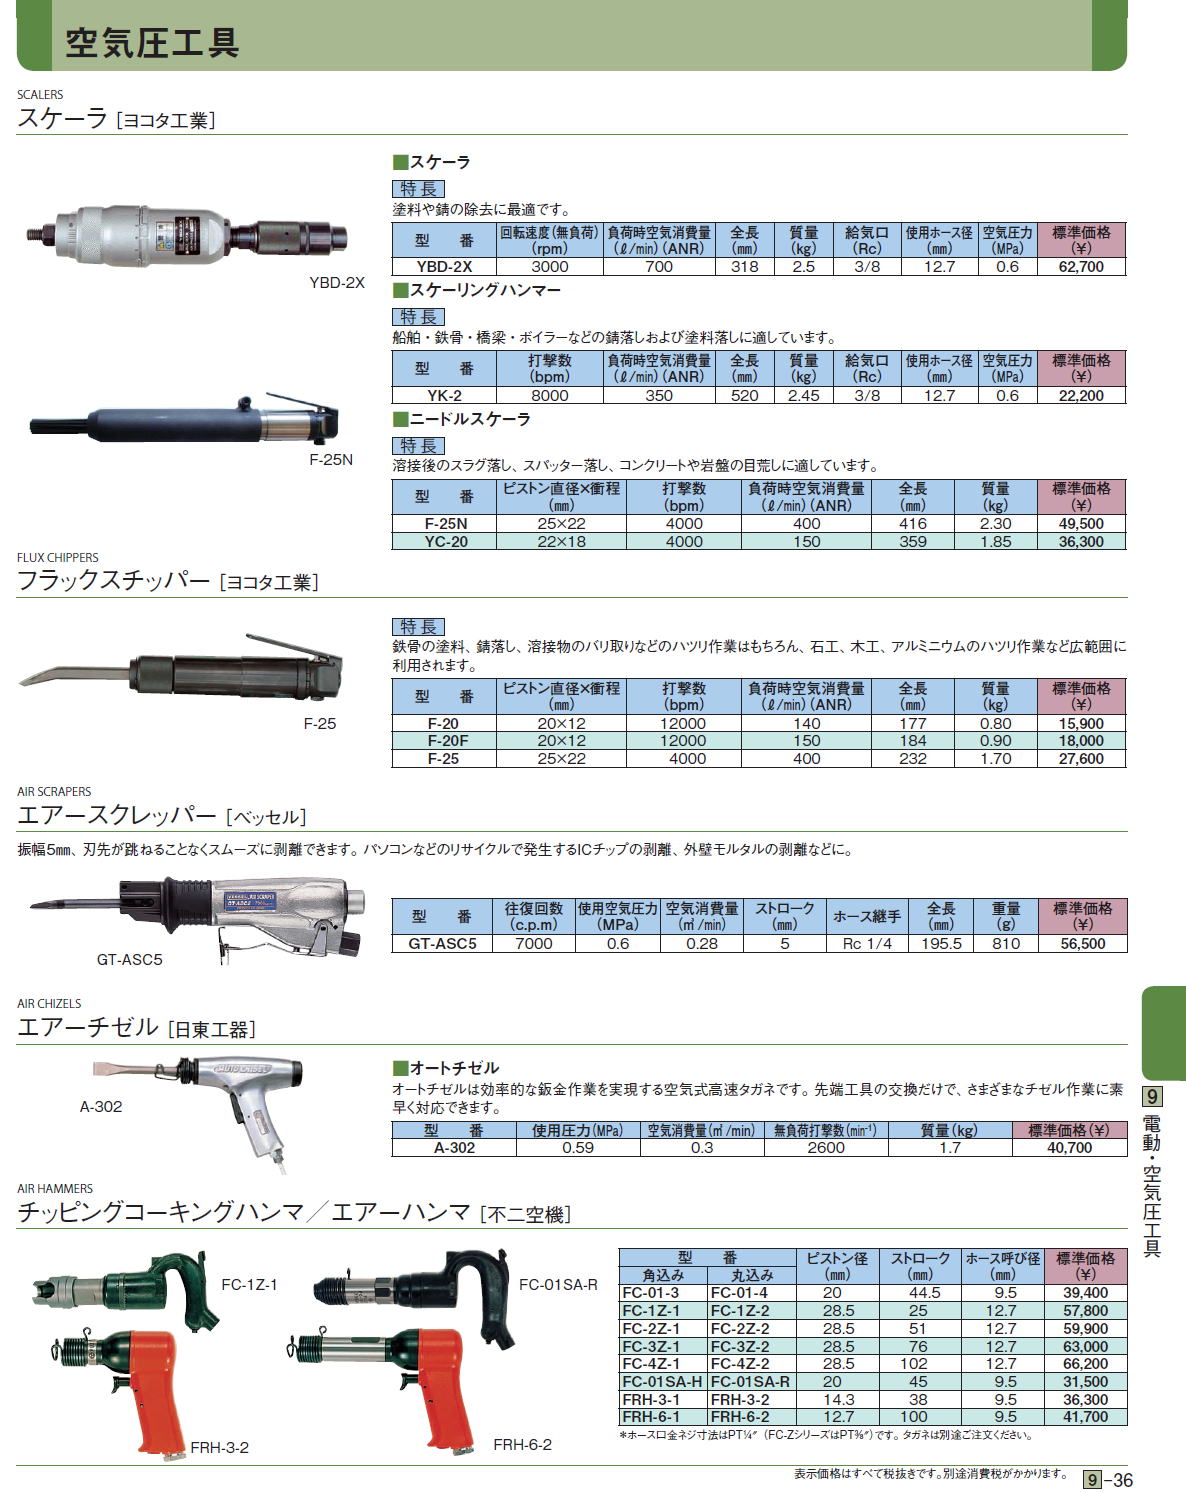 ヨコタ:エアータッパー YT-6 タッパ YT-6 工具 エア工具 エアーツール